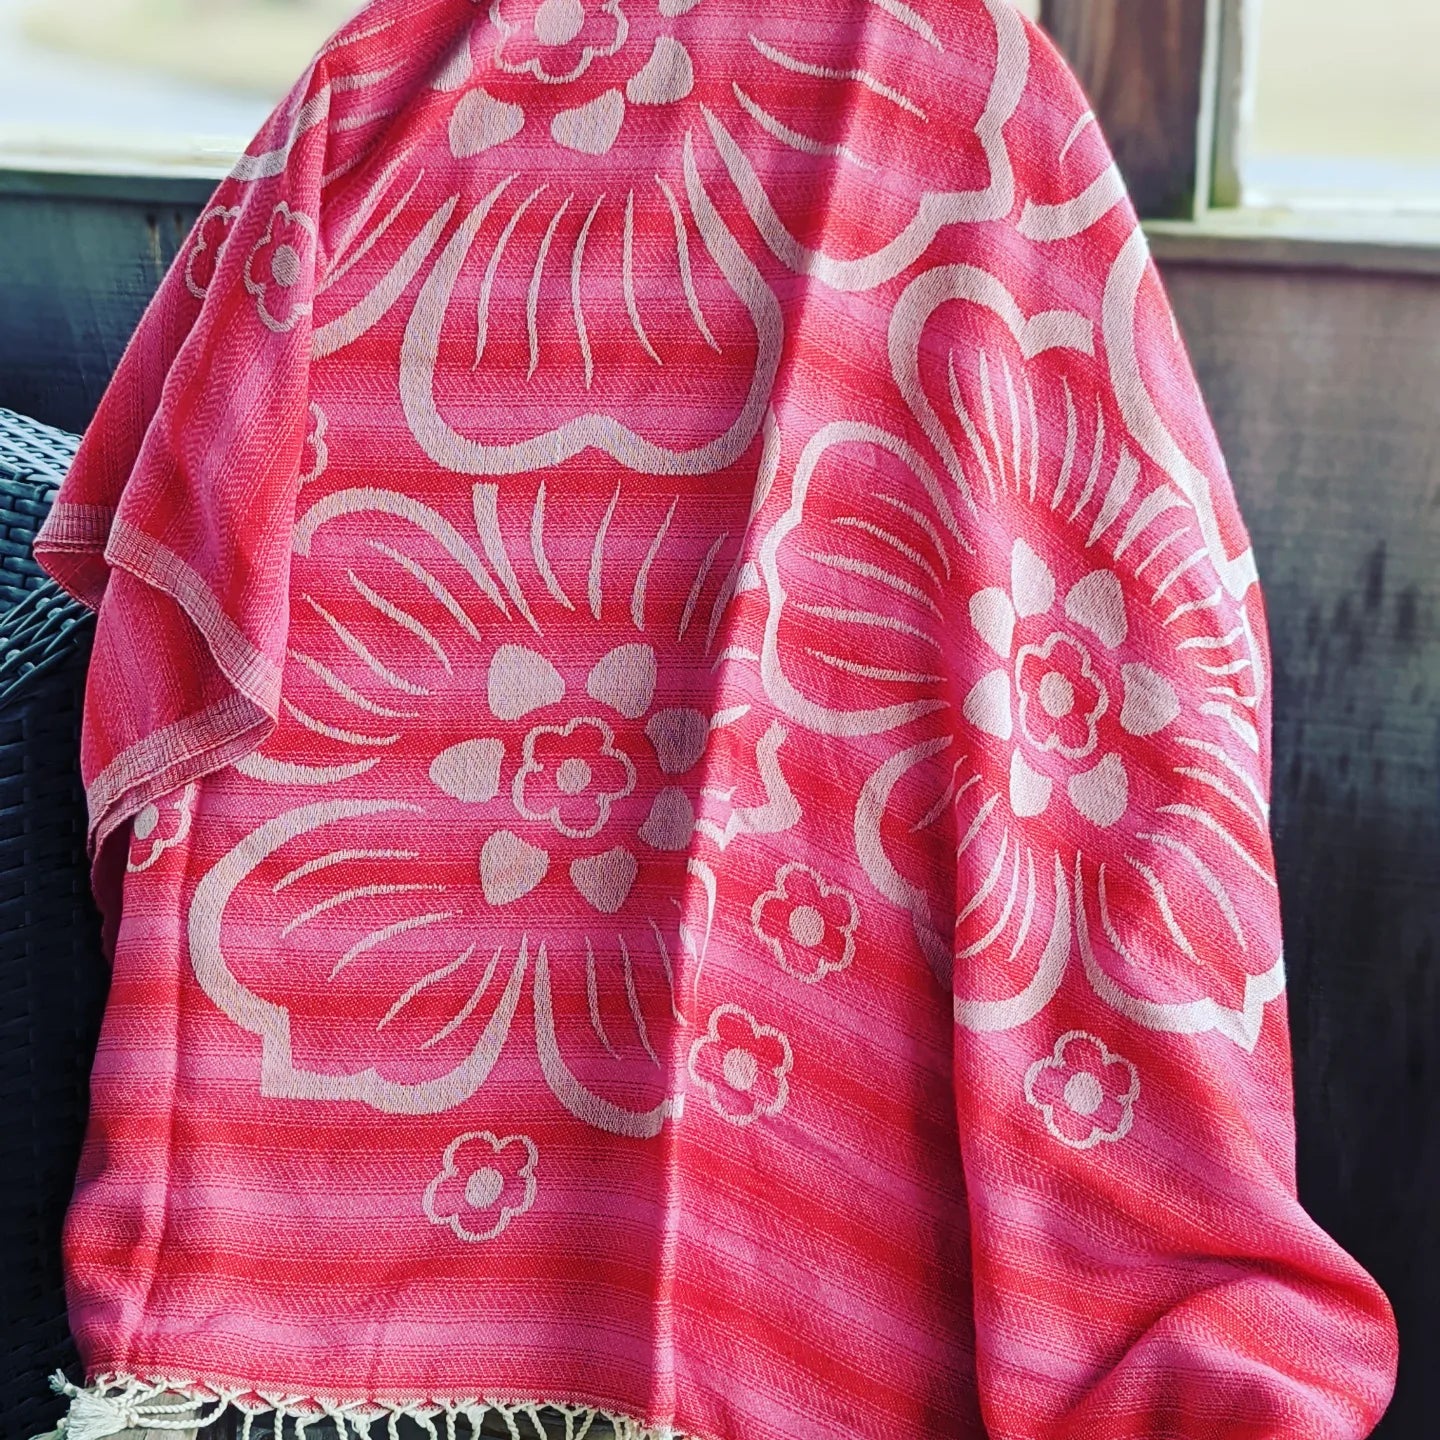 Soft, unique Turkish Towels